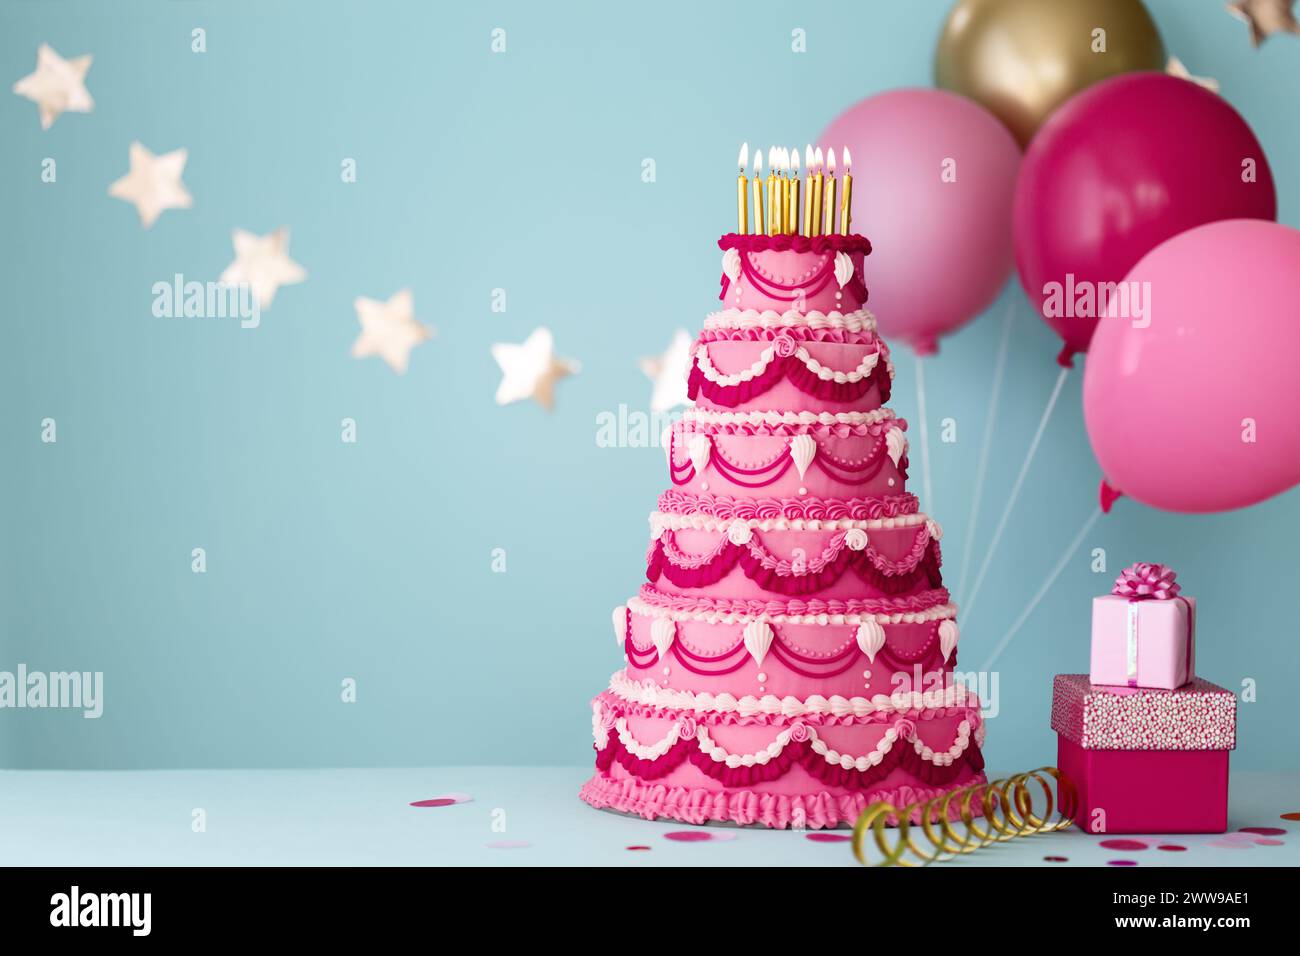 Elaborata torta di compleanno rosa a più livelli con regali e palloncini di compleanno per una festa di compleanno Foto Stock